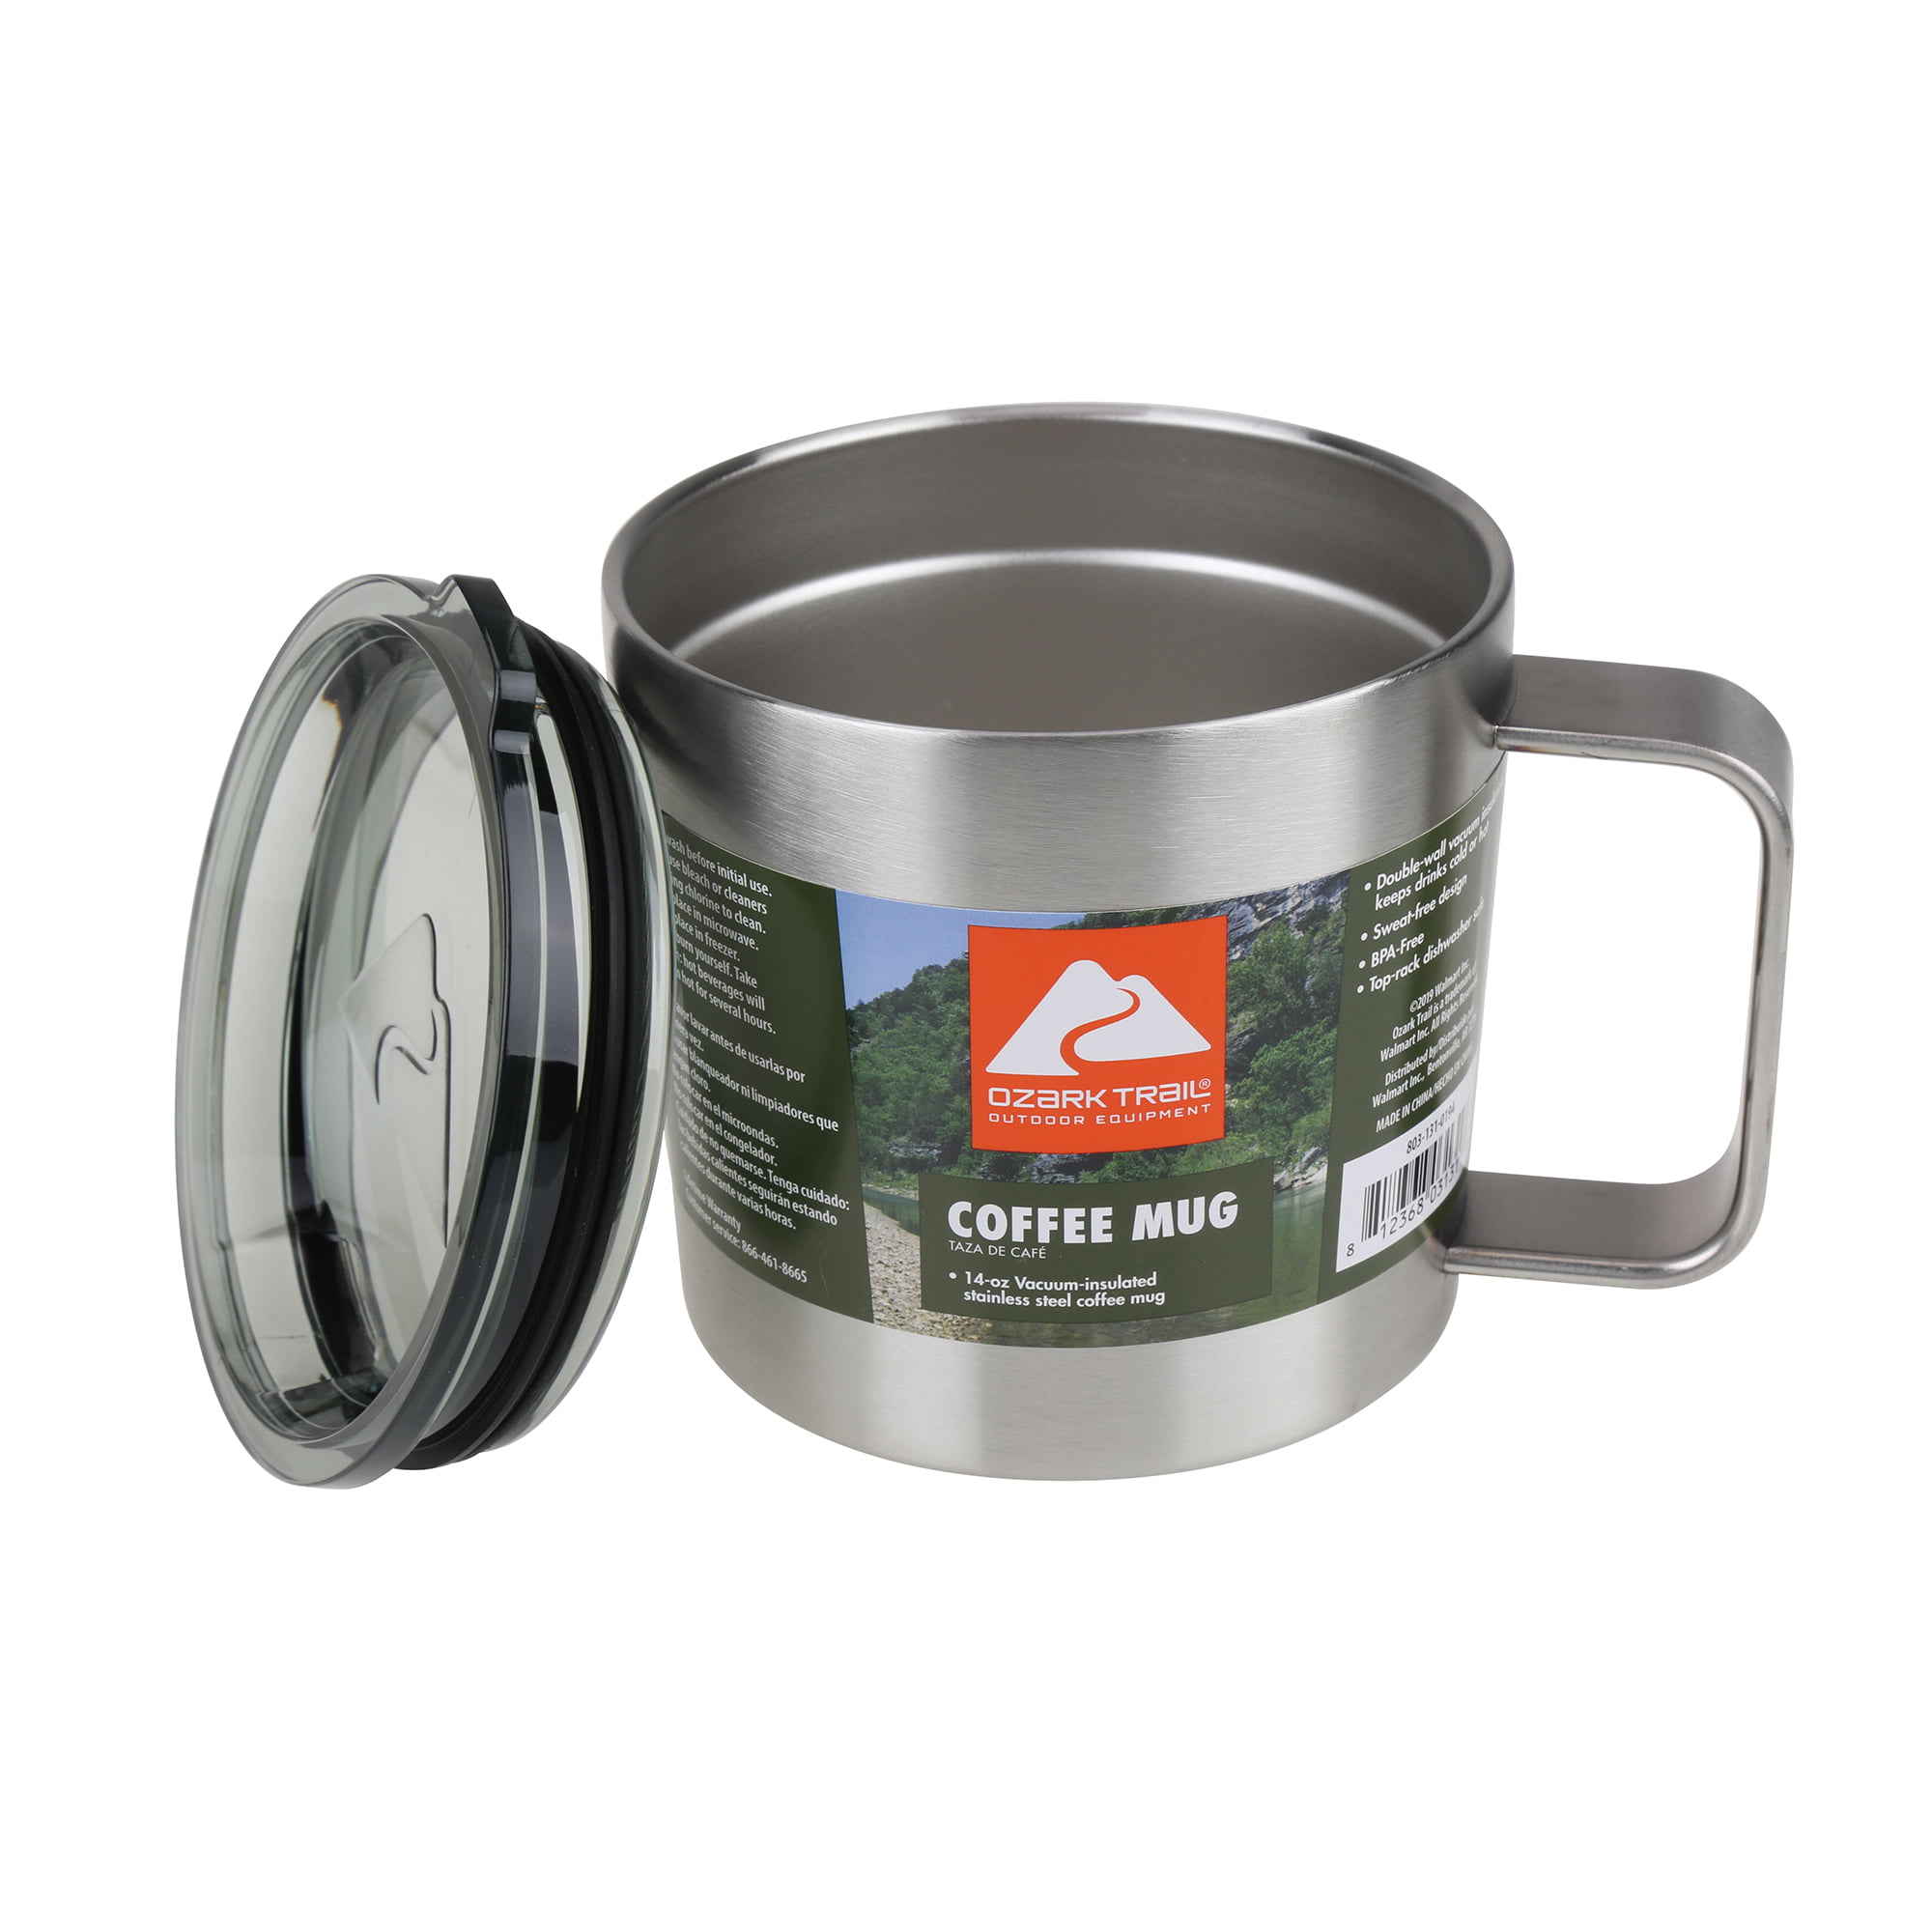 Ozark Trail Enamel Coffee Mug with Handle in Assorted Prints - 17 oz